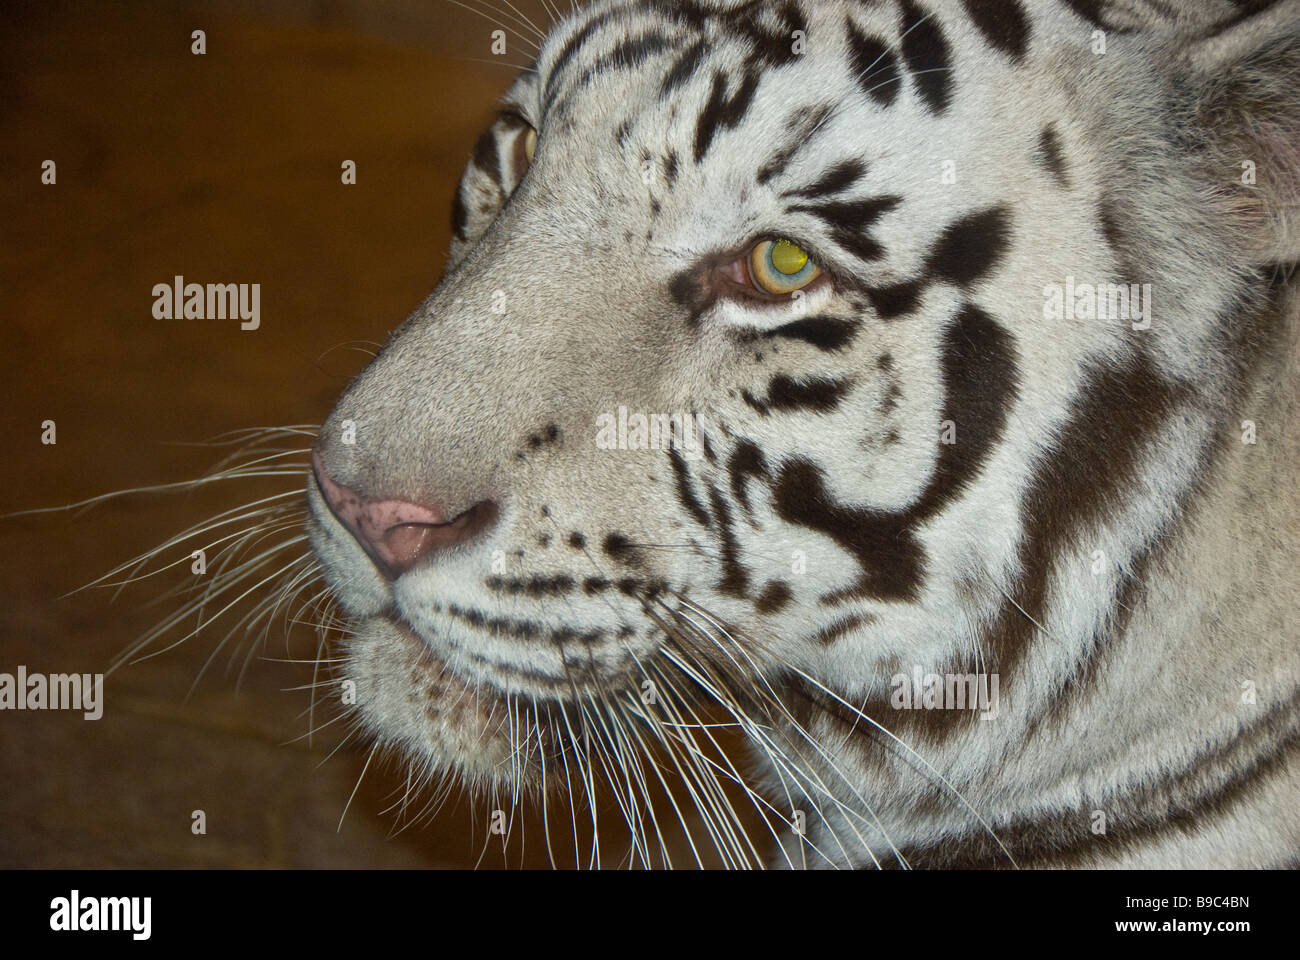 Tigre blanc gros plan portrait du visage animal sauvage Houston Downtown Aquarium Texas attraction touristique Banque D'Images